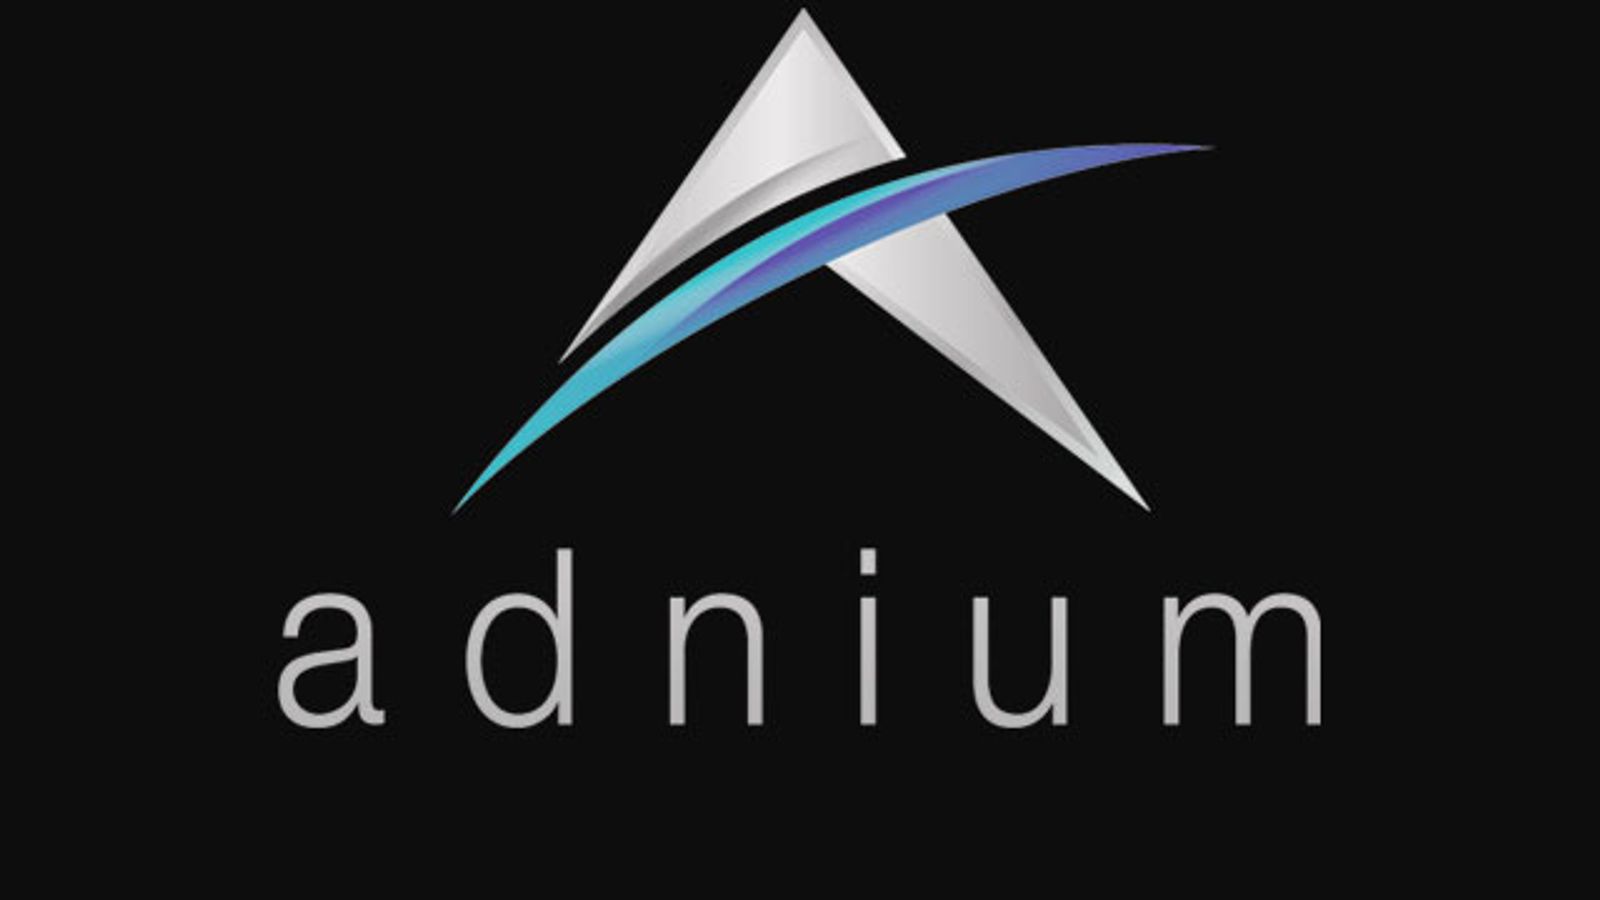 Adnium Aggressively Raises Inventory of Pop-Under Impressions